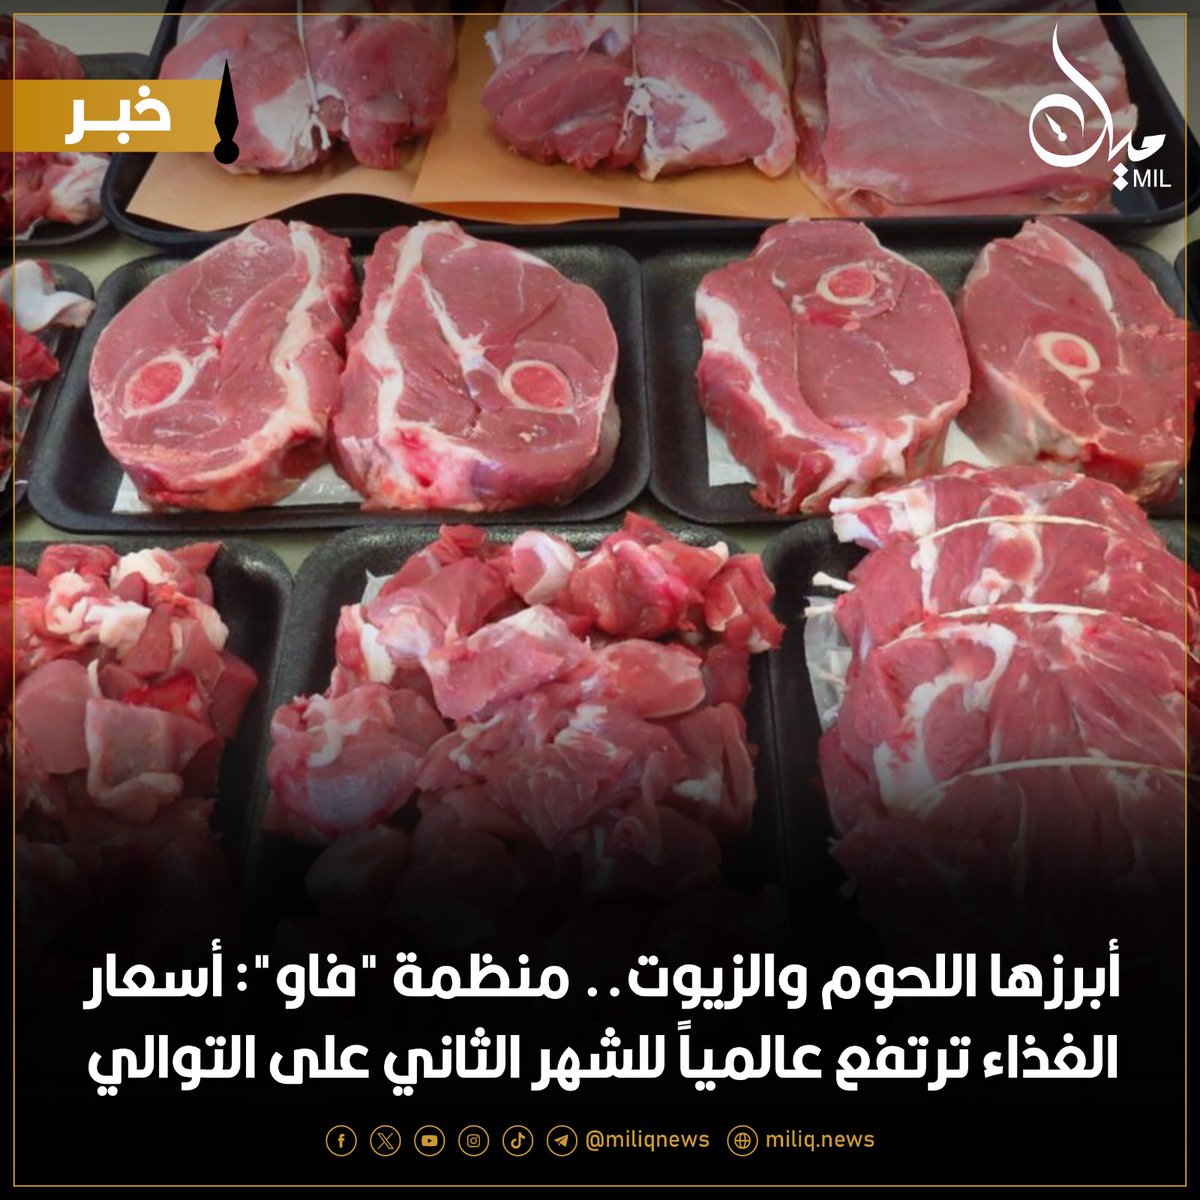 أبرزها اللحوم والزيوت.. منظمة 'فاو': أسعار الغذاء ترتفع عالمياً للشهر الثاني على التوالي

miliq.news/economy/29573-…